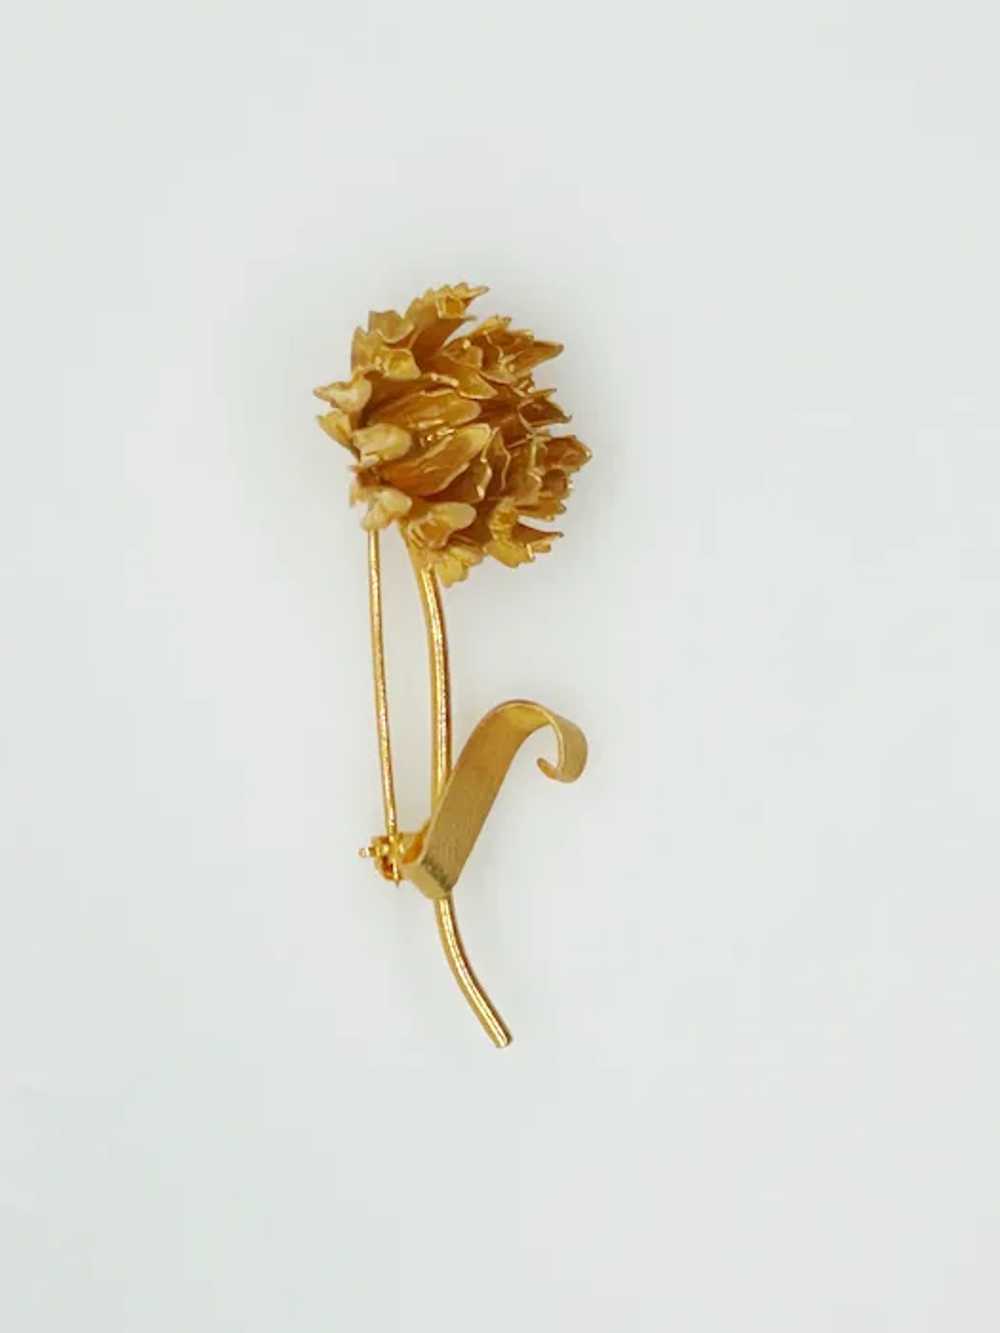 Striking Golden Vintage Flower Brooch - image 2